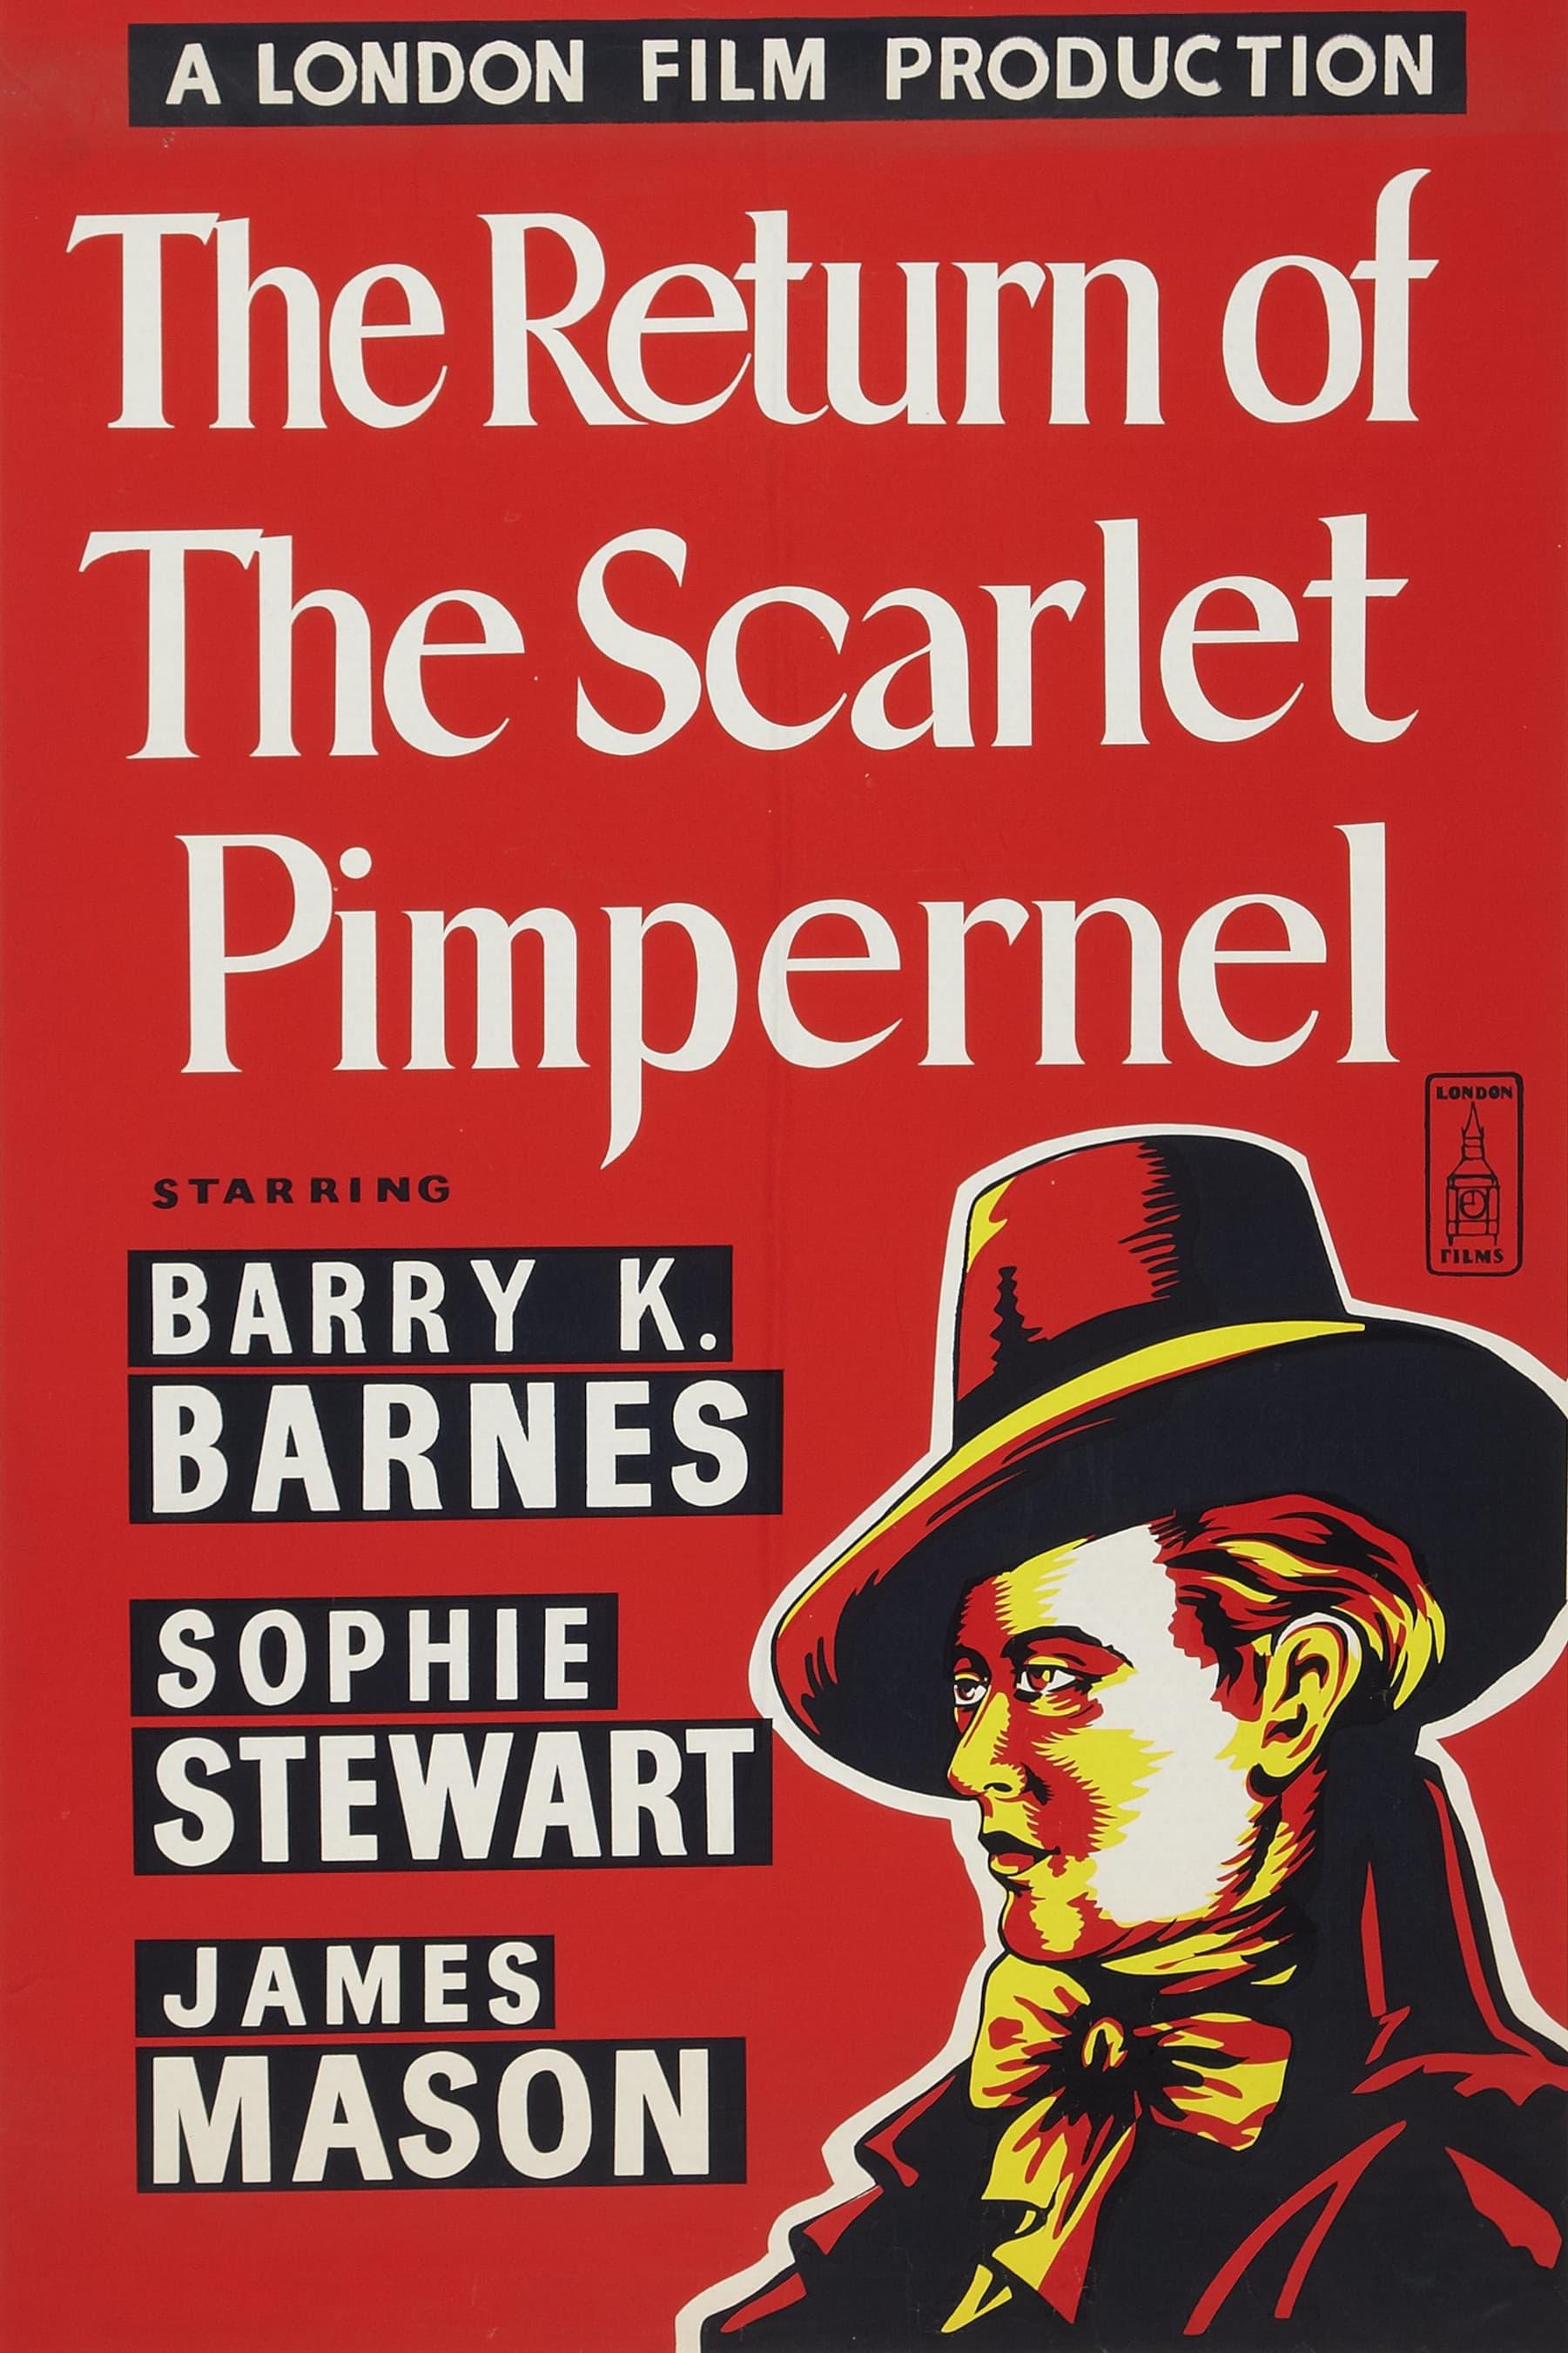 Return of the Scarlet Pimpernel poster